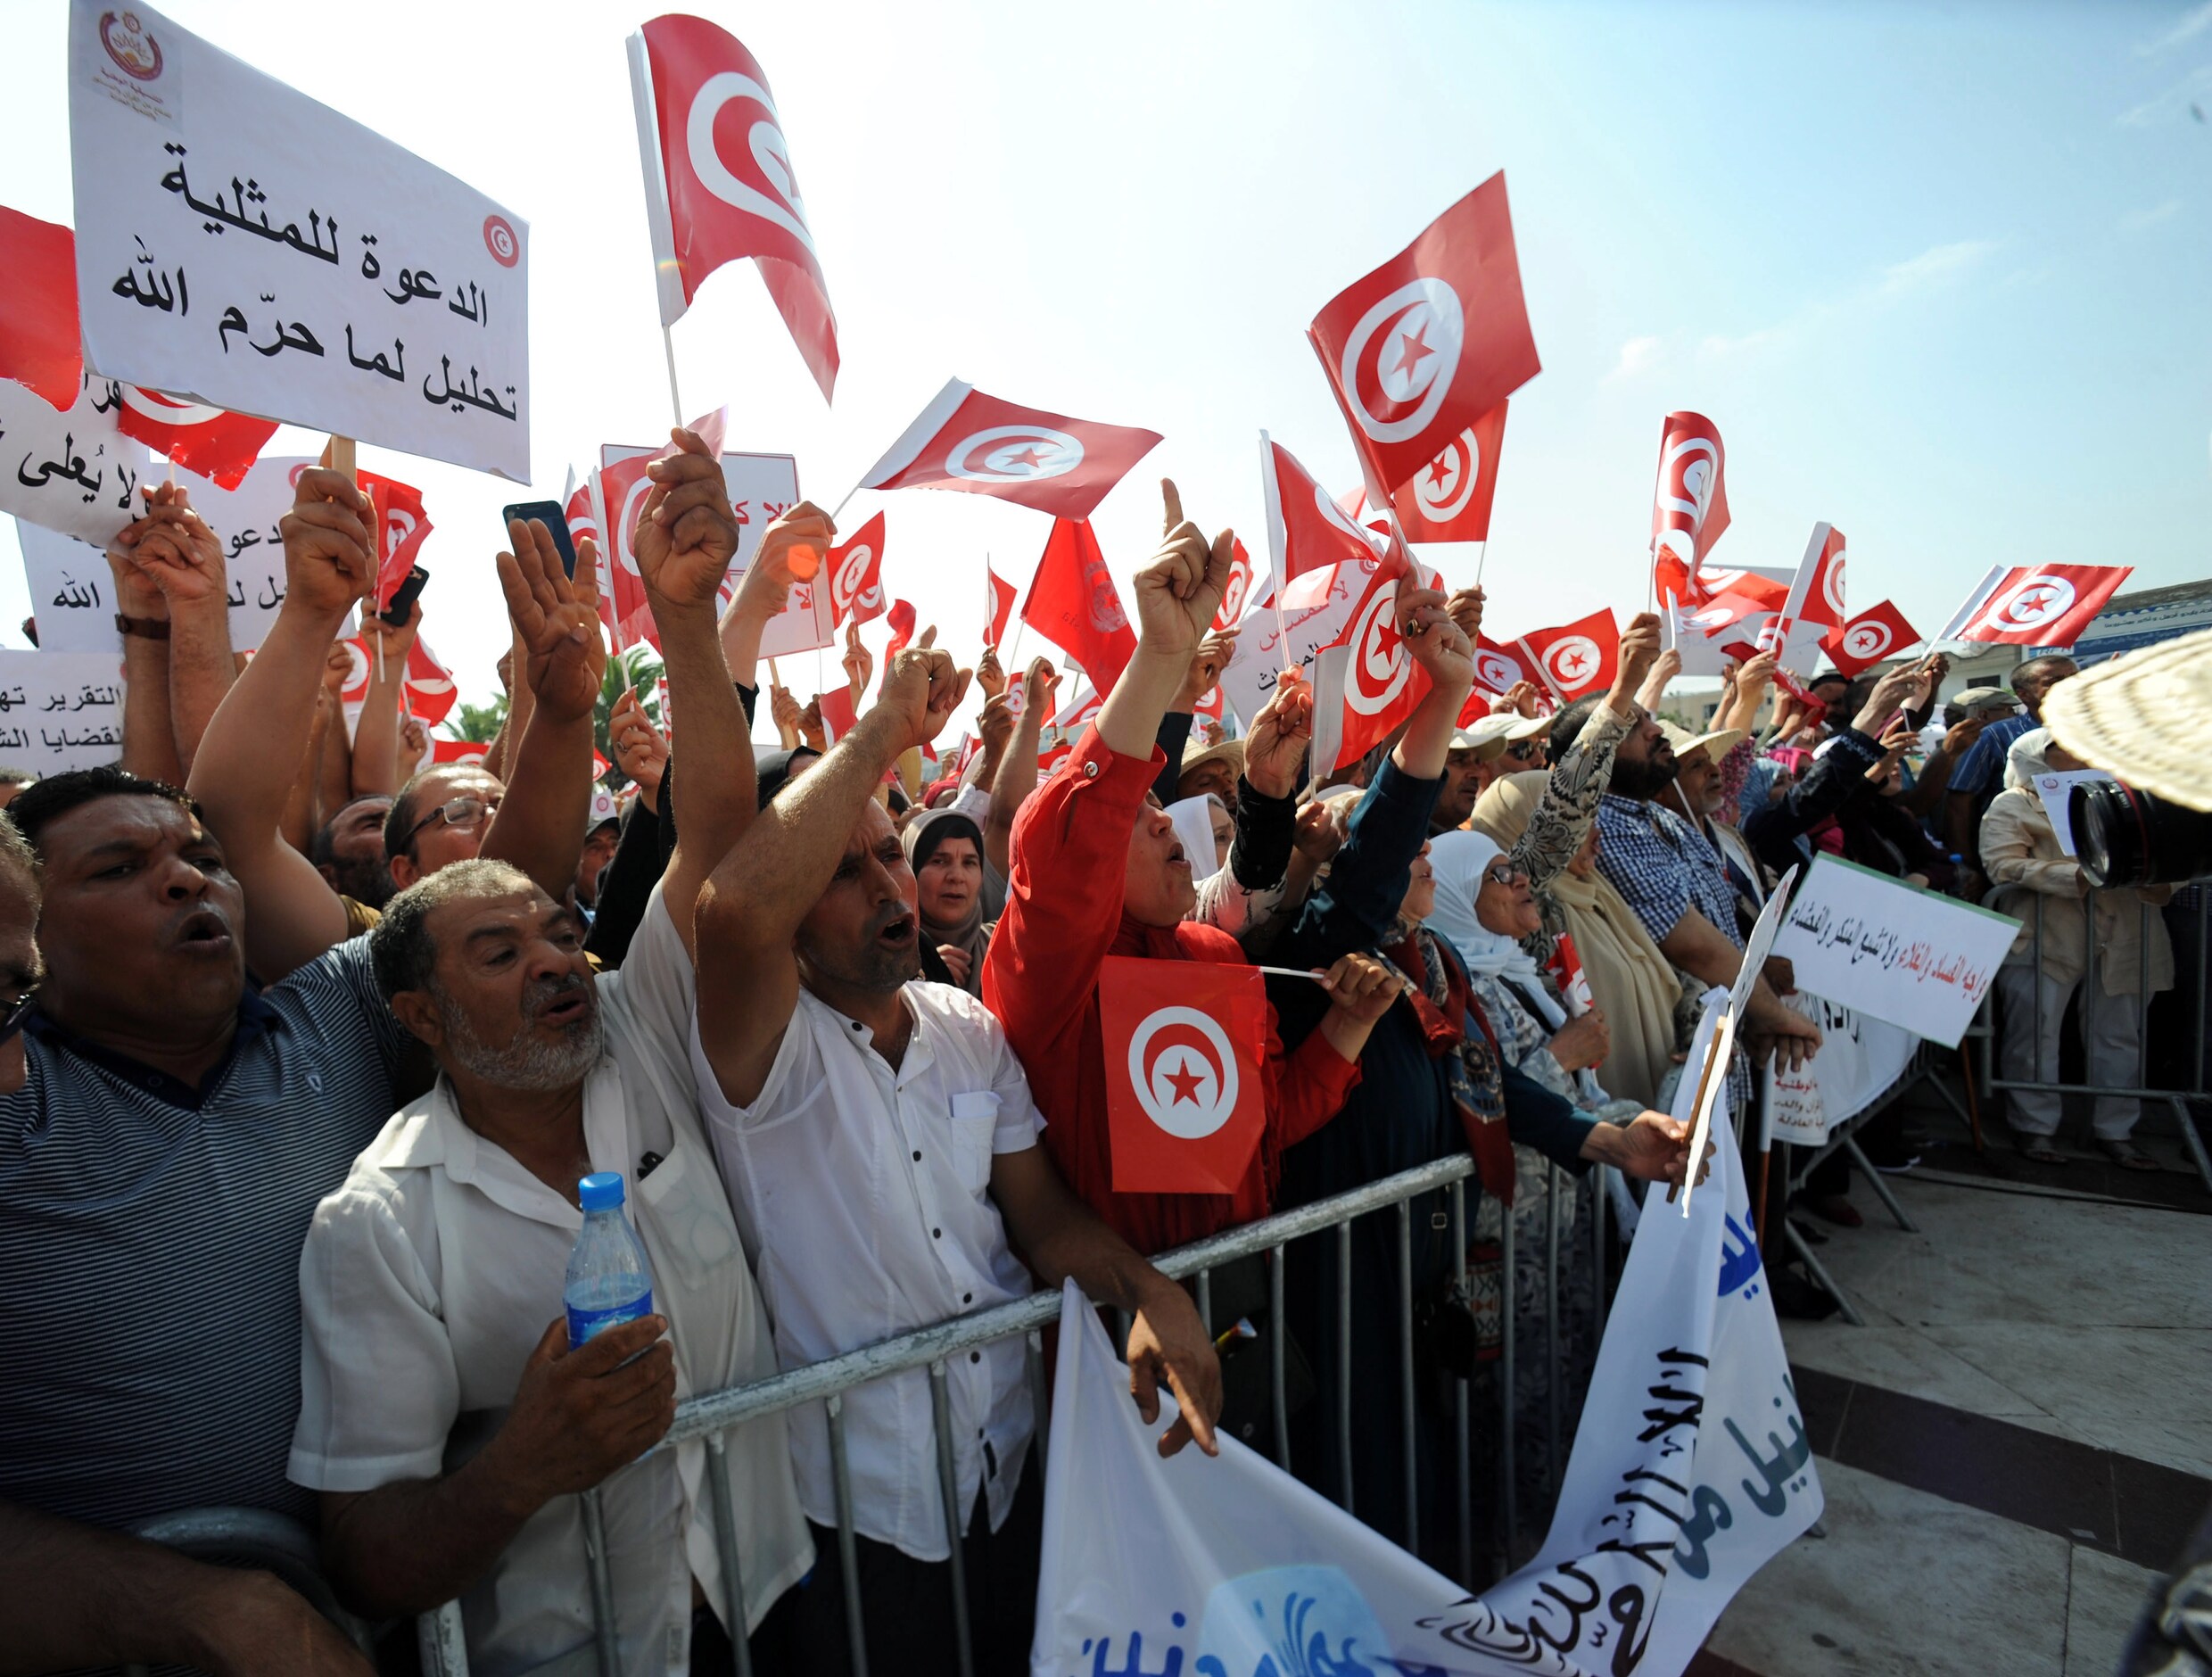 Honderden Tunesische mannen én vrouwen op straat tegen vrouwenrechten